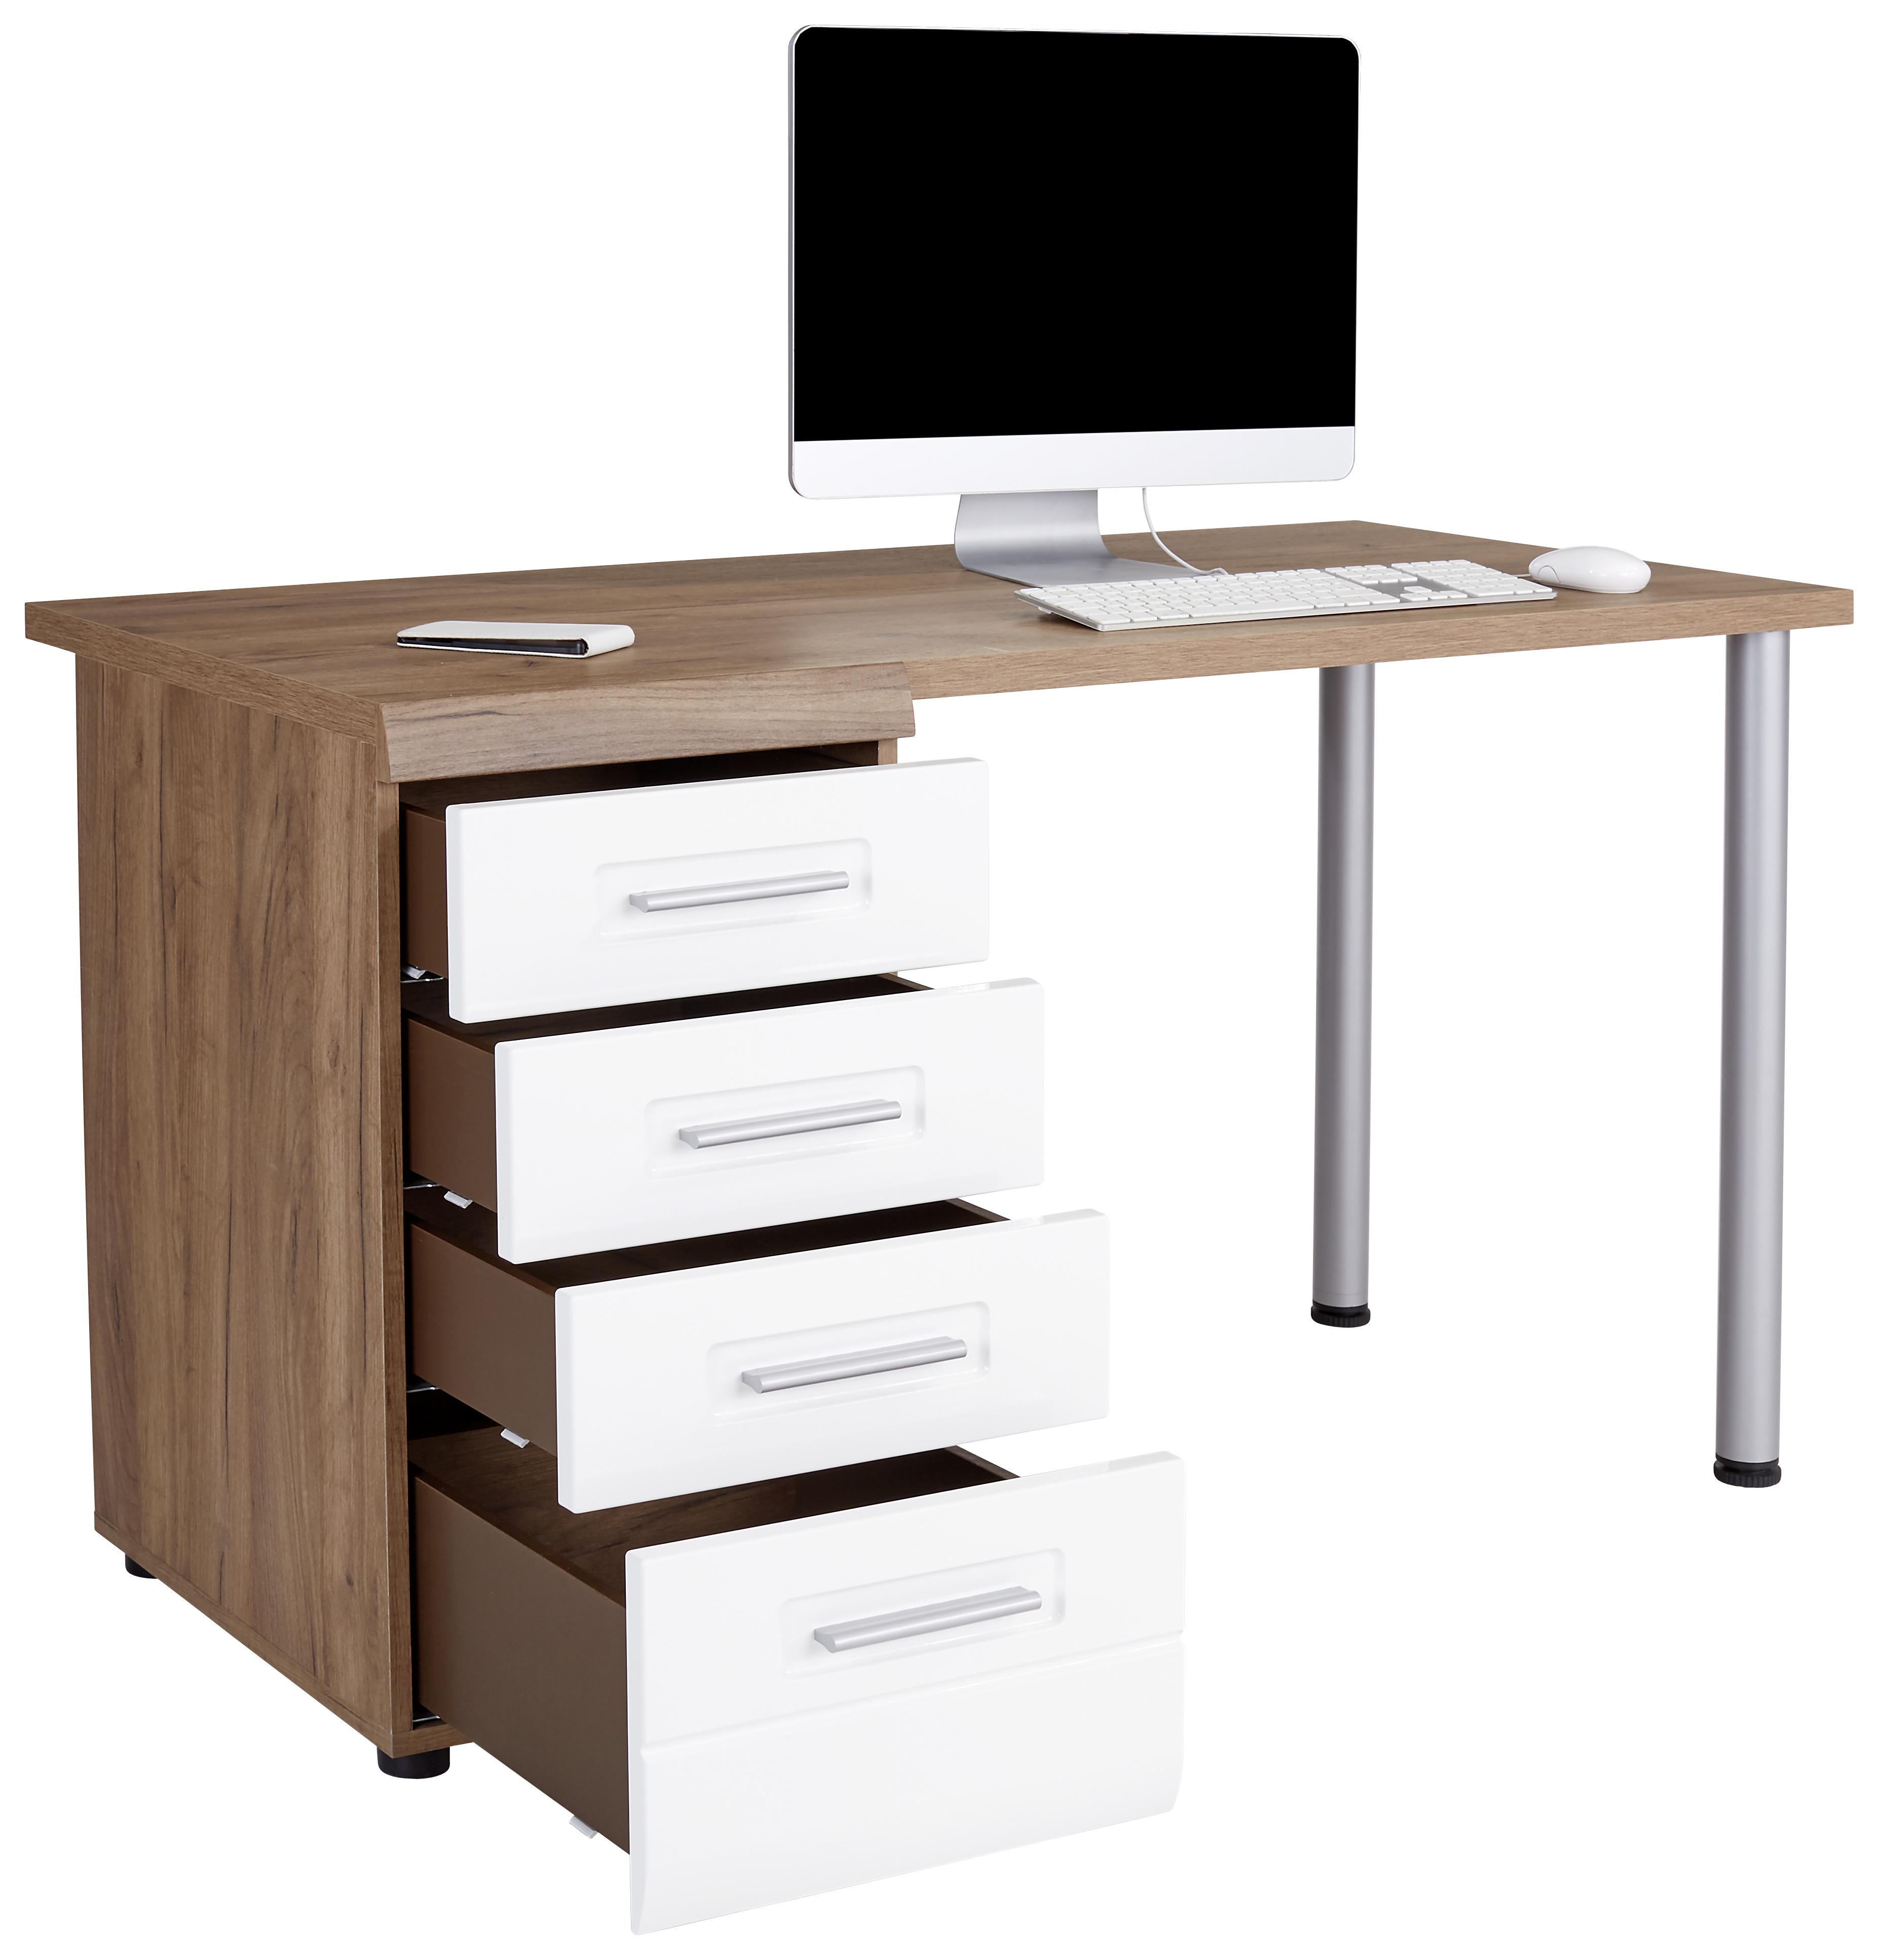 Schreibtisch mit Stauraum B 130cm H 72cm Avensis New - Eichefarben/Weiß, KONVENTIONELL, Holzwerkstoff (130/72cm) - Luca Bessoni